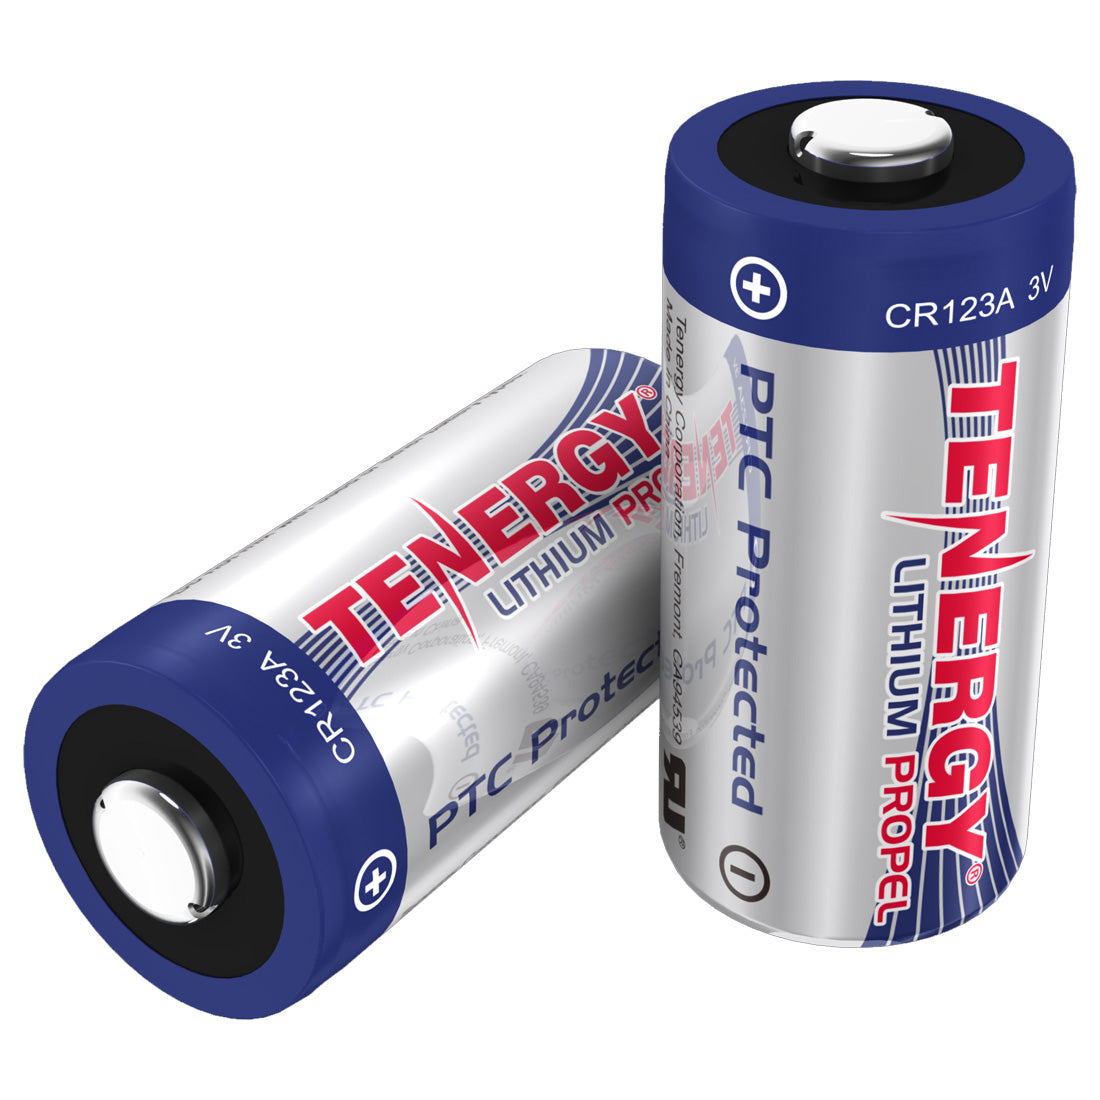 Fenix Tenergy CR123 Lithium 3V Batteries - 2 Pack